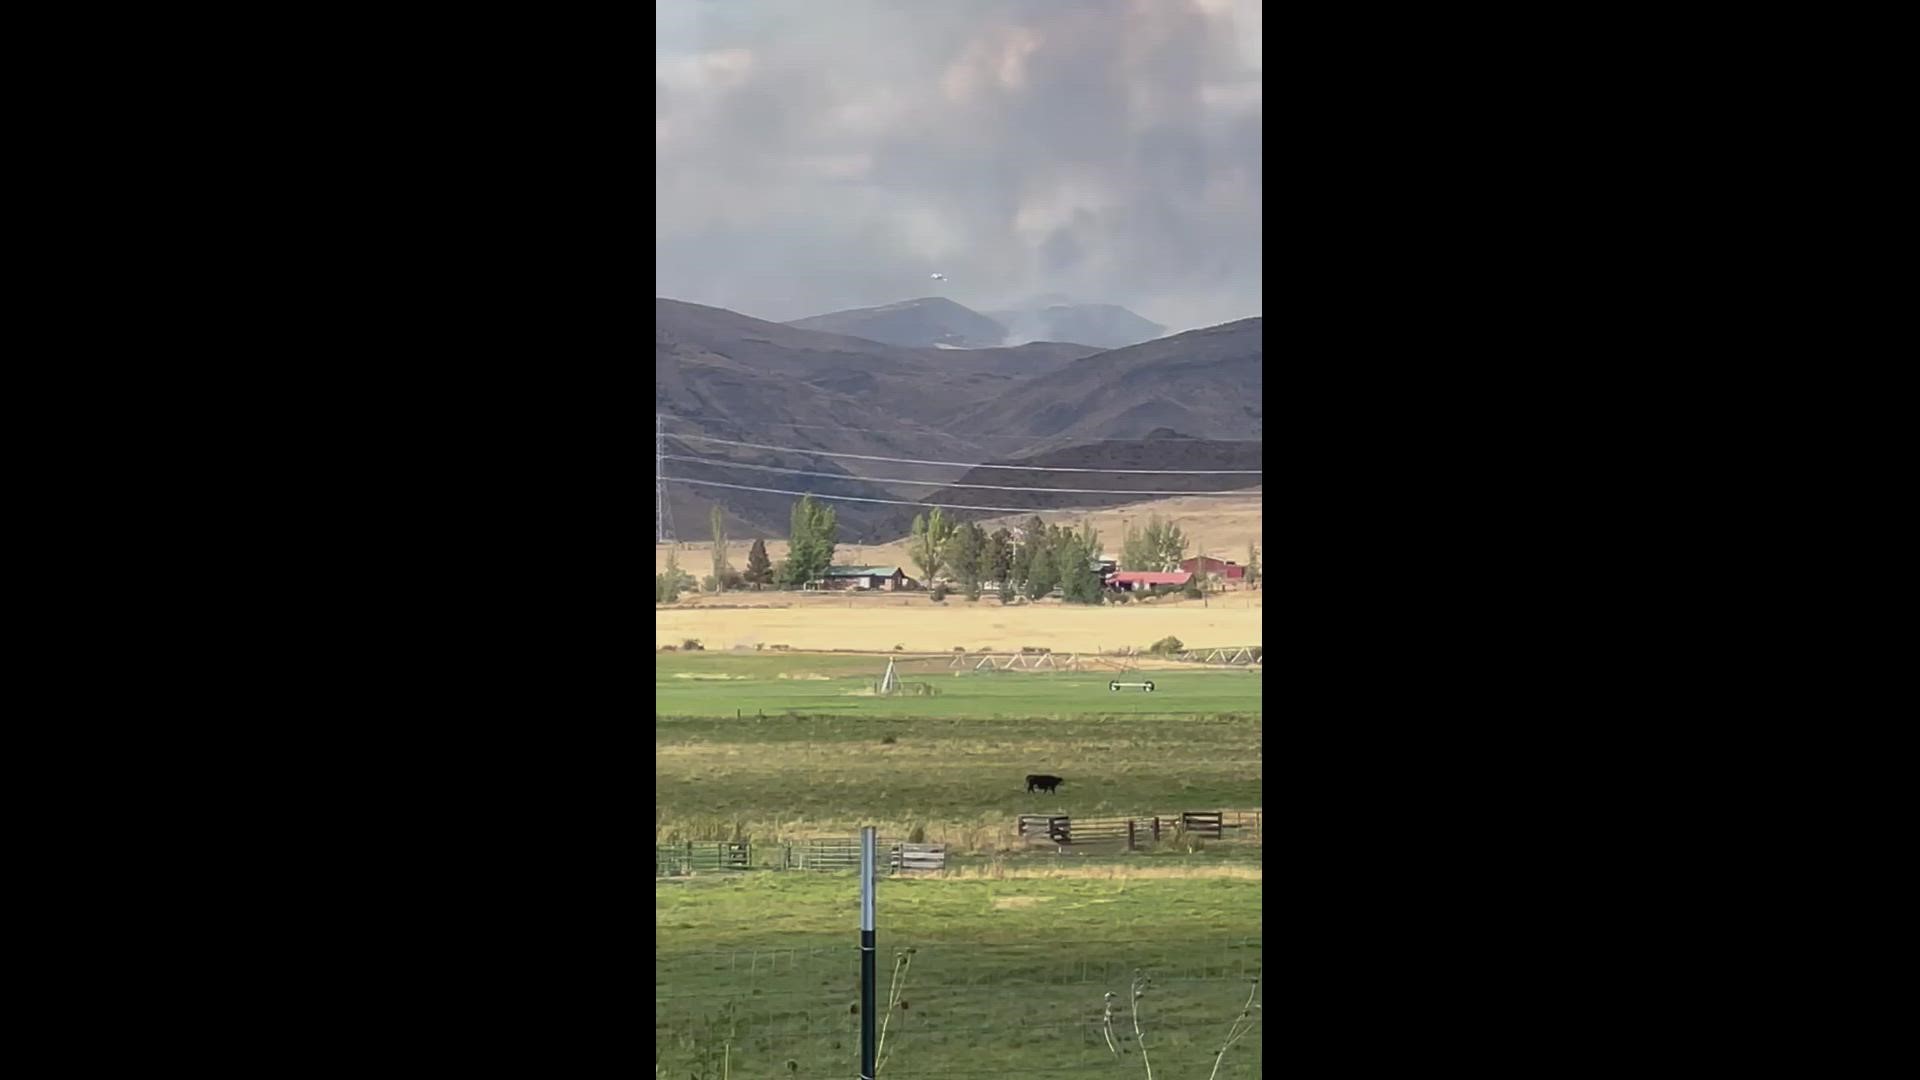 Video shot from Sweet, Idaho, courtesy of David Furst.